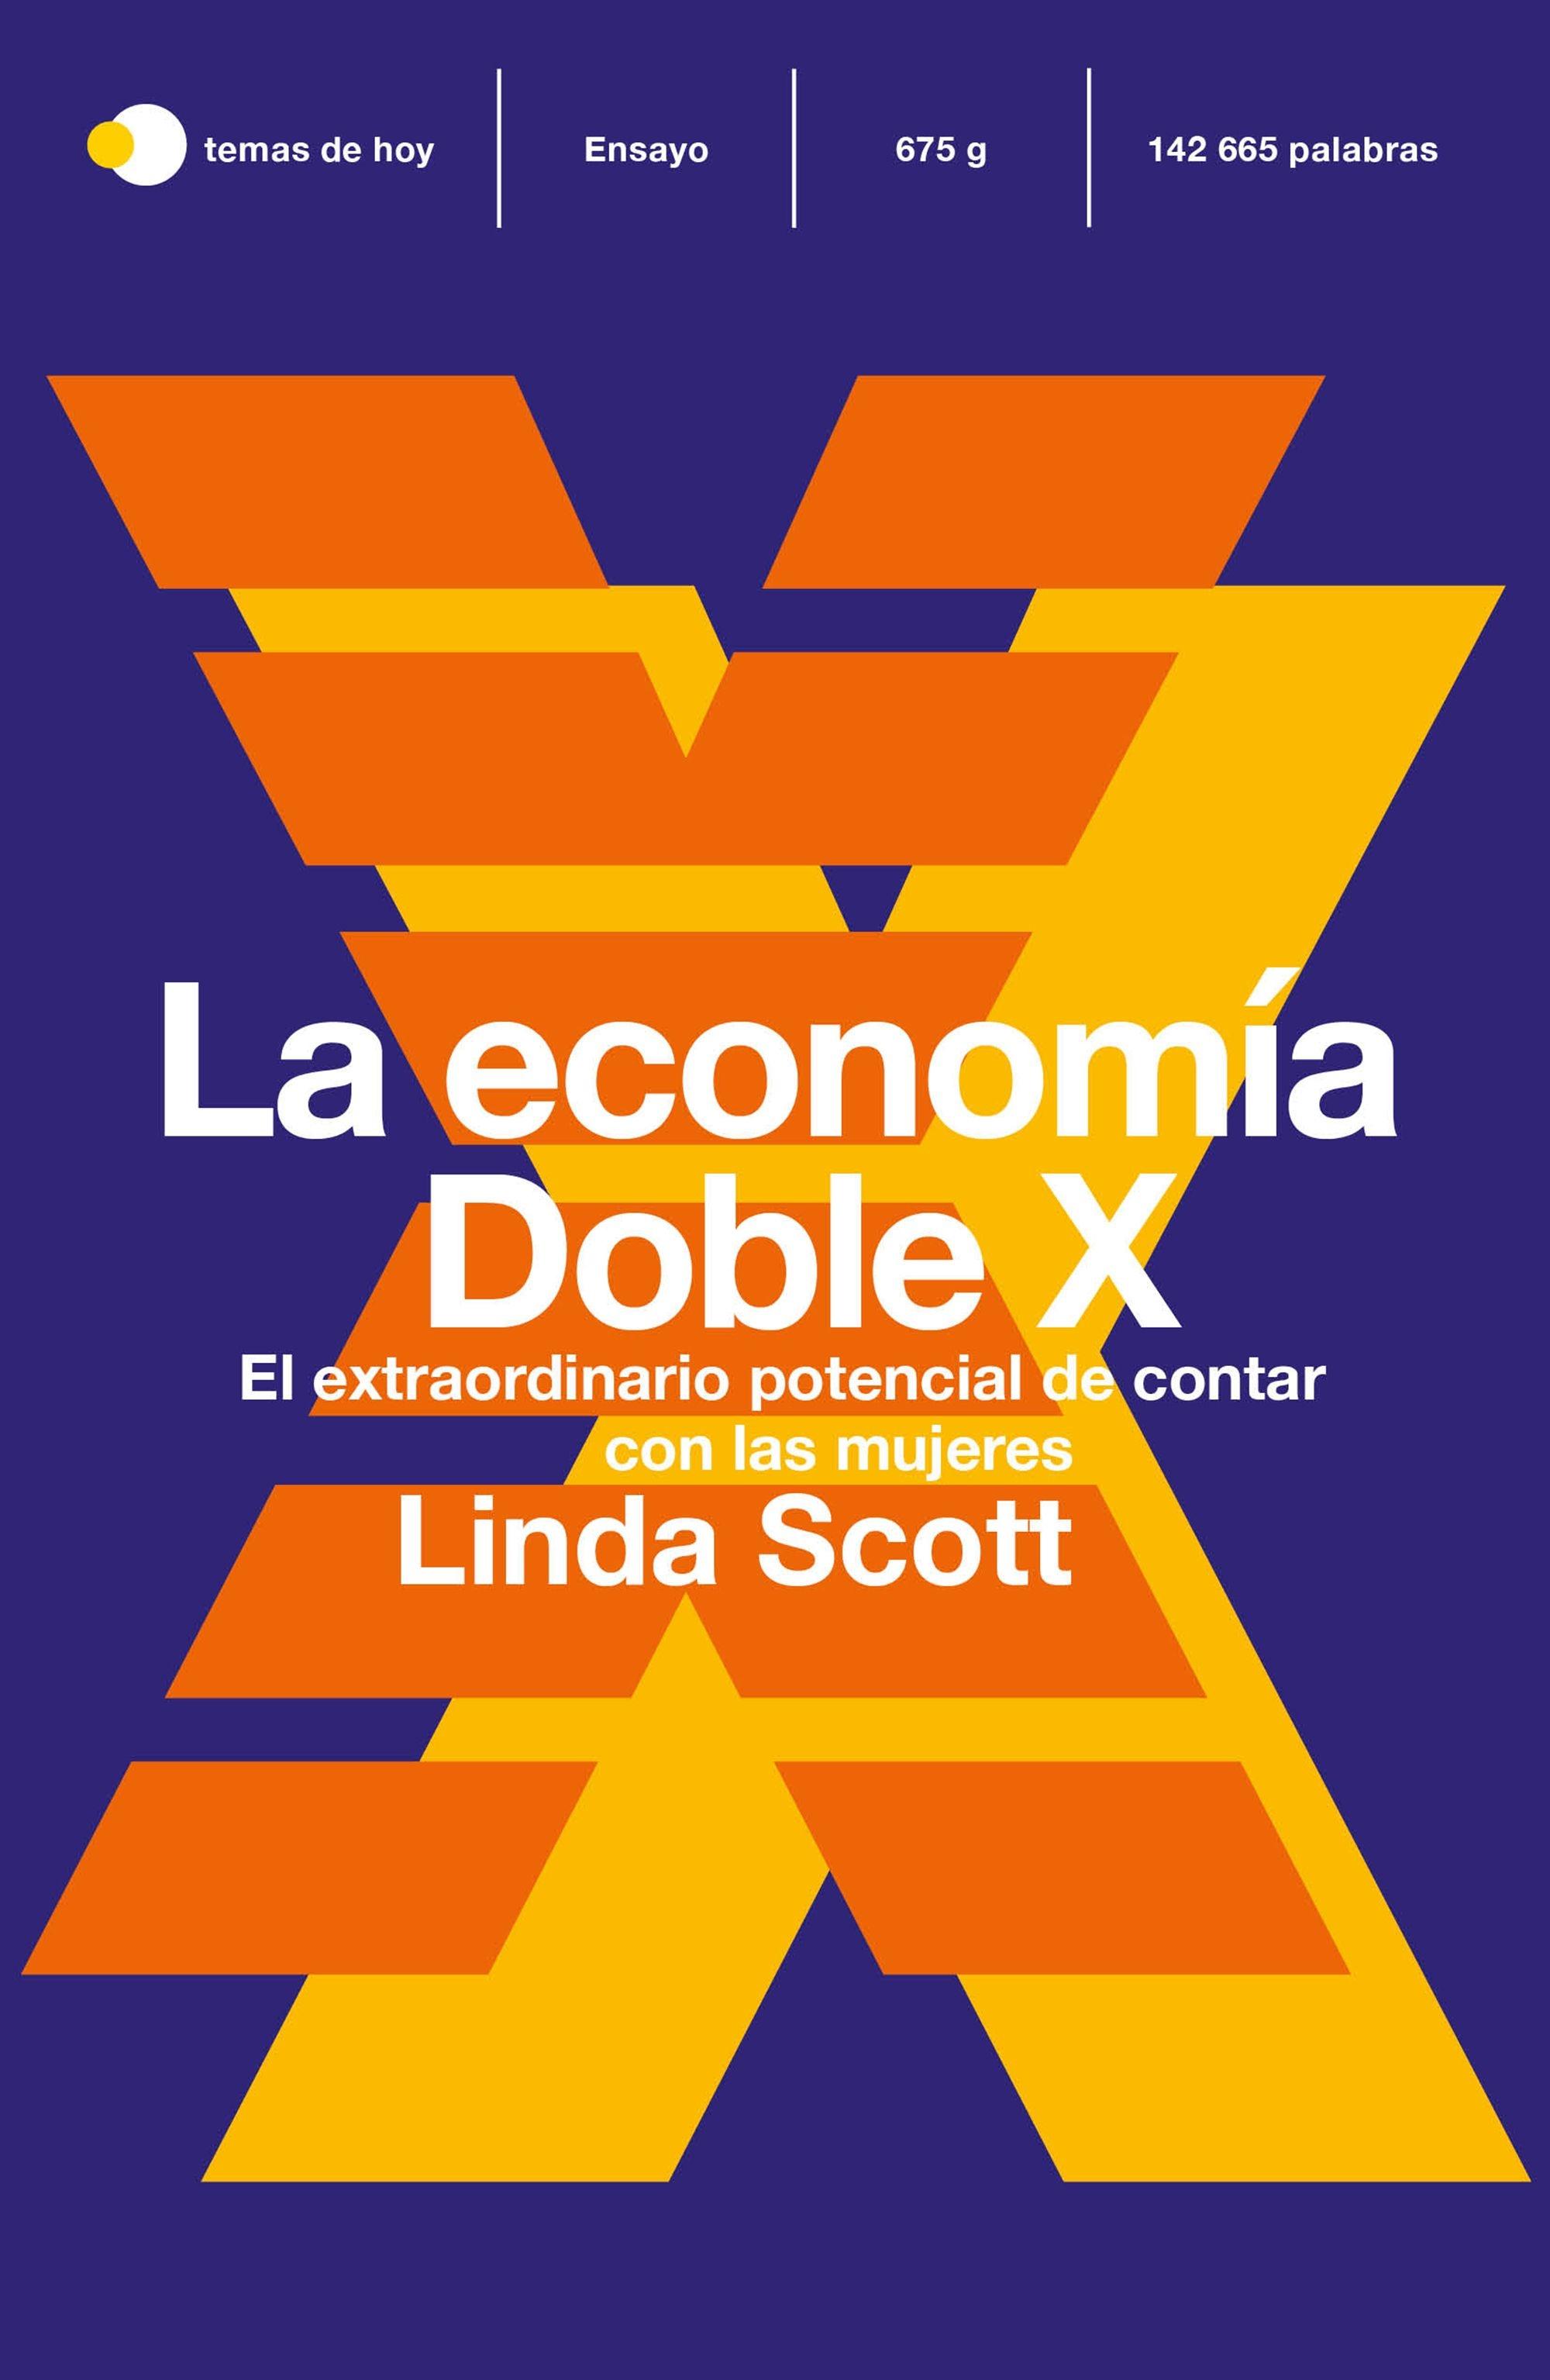 La economía Doble X "El extraordinario potencial de contar con las mujeres". 